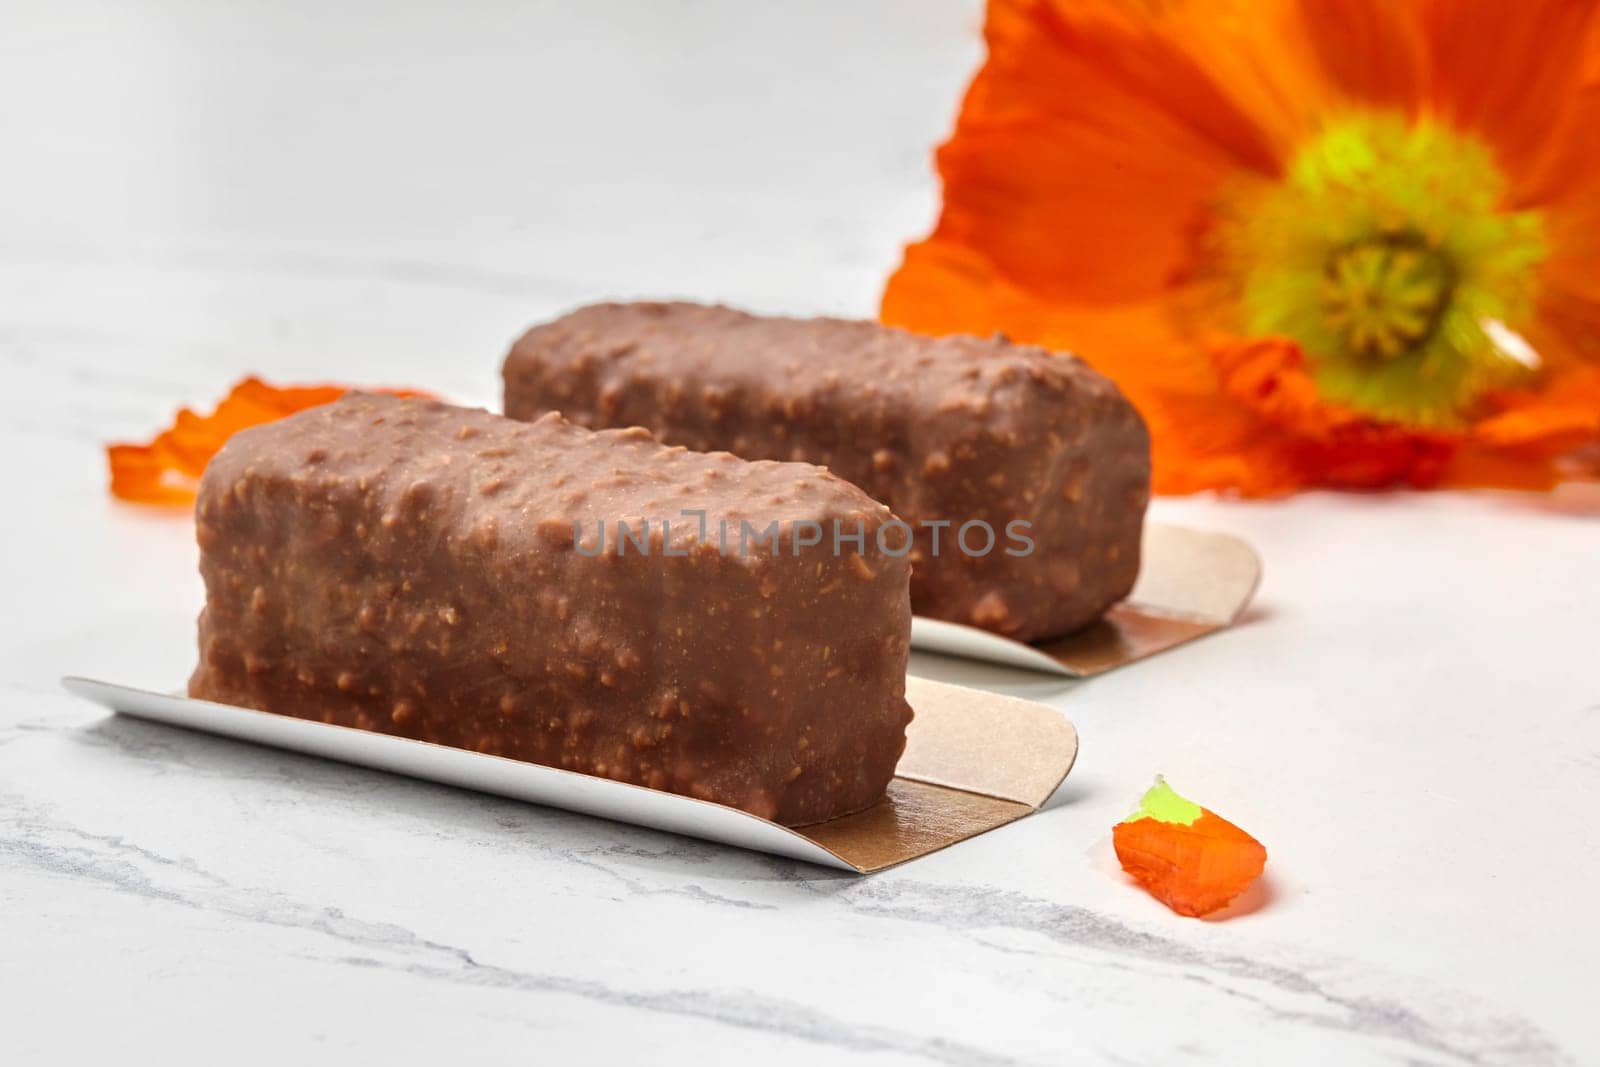 Chocolate and nut mini loaf cakes with orange poppy flower by nazarovsergey